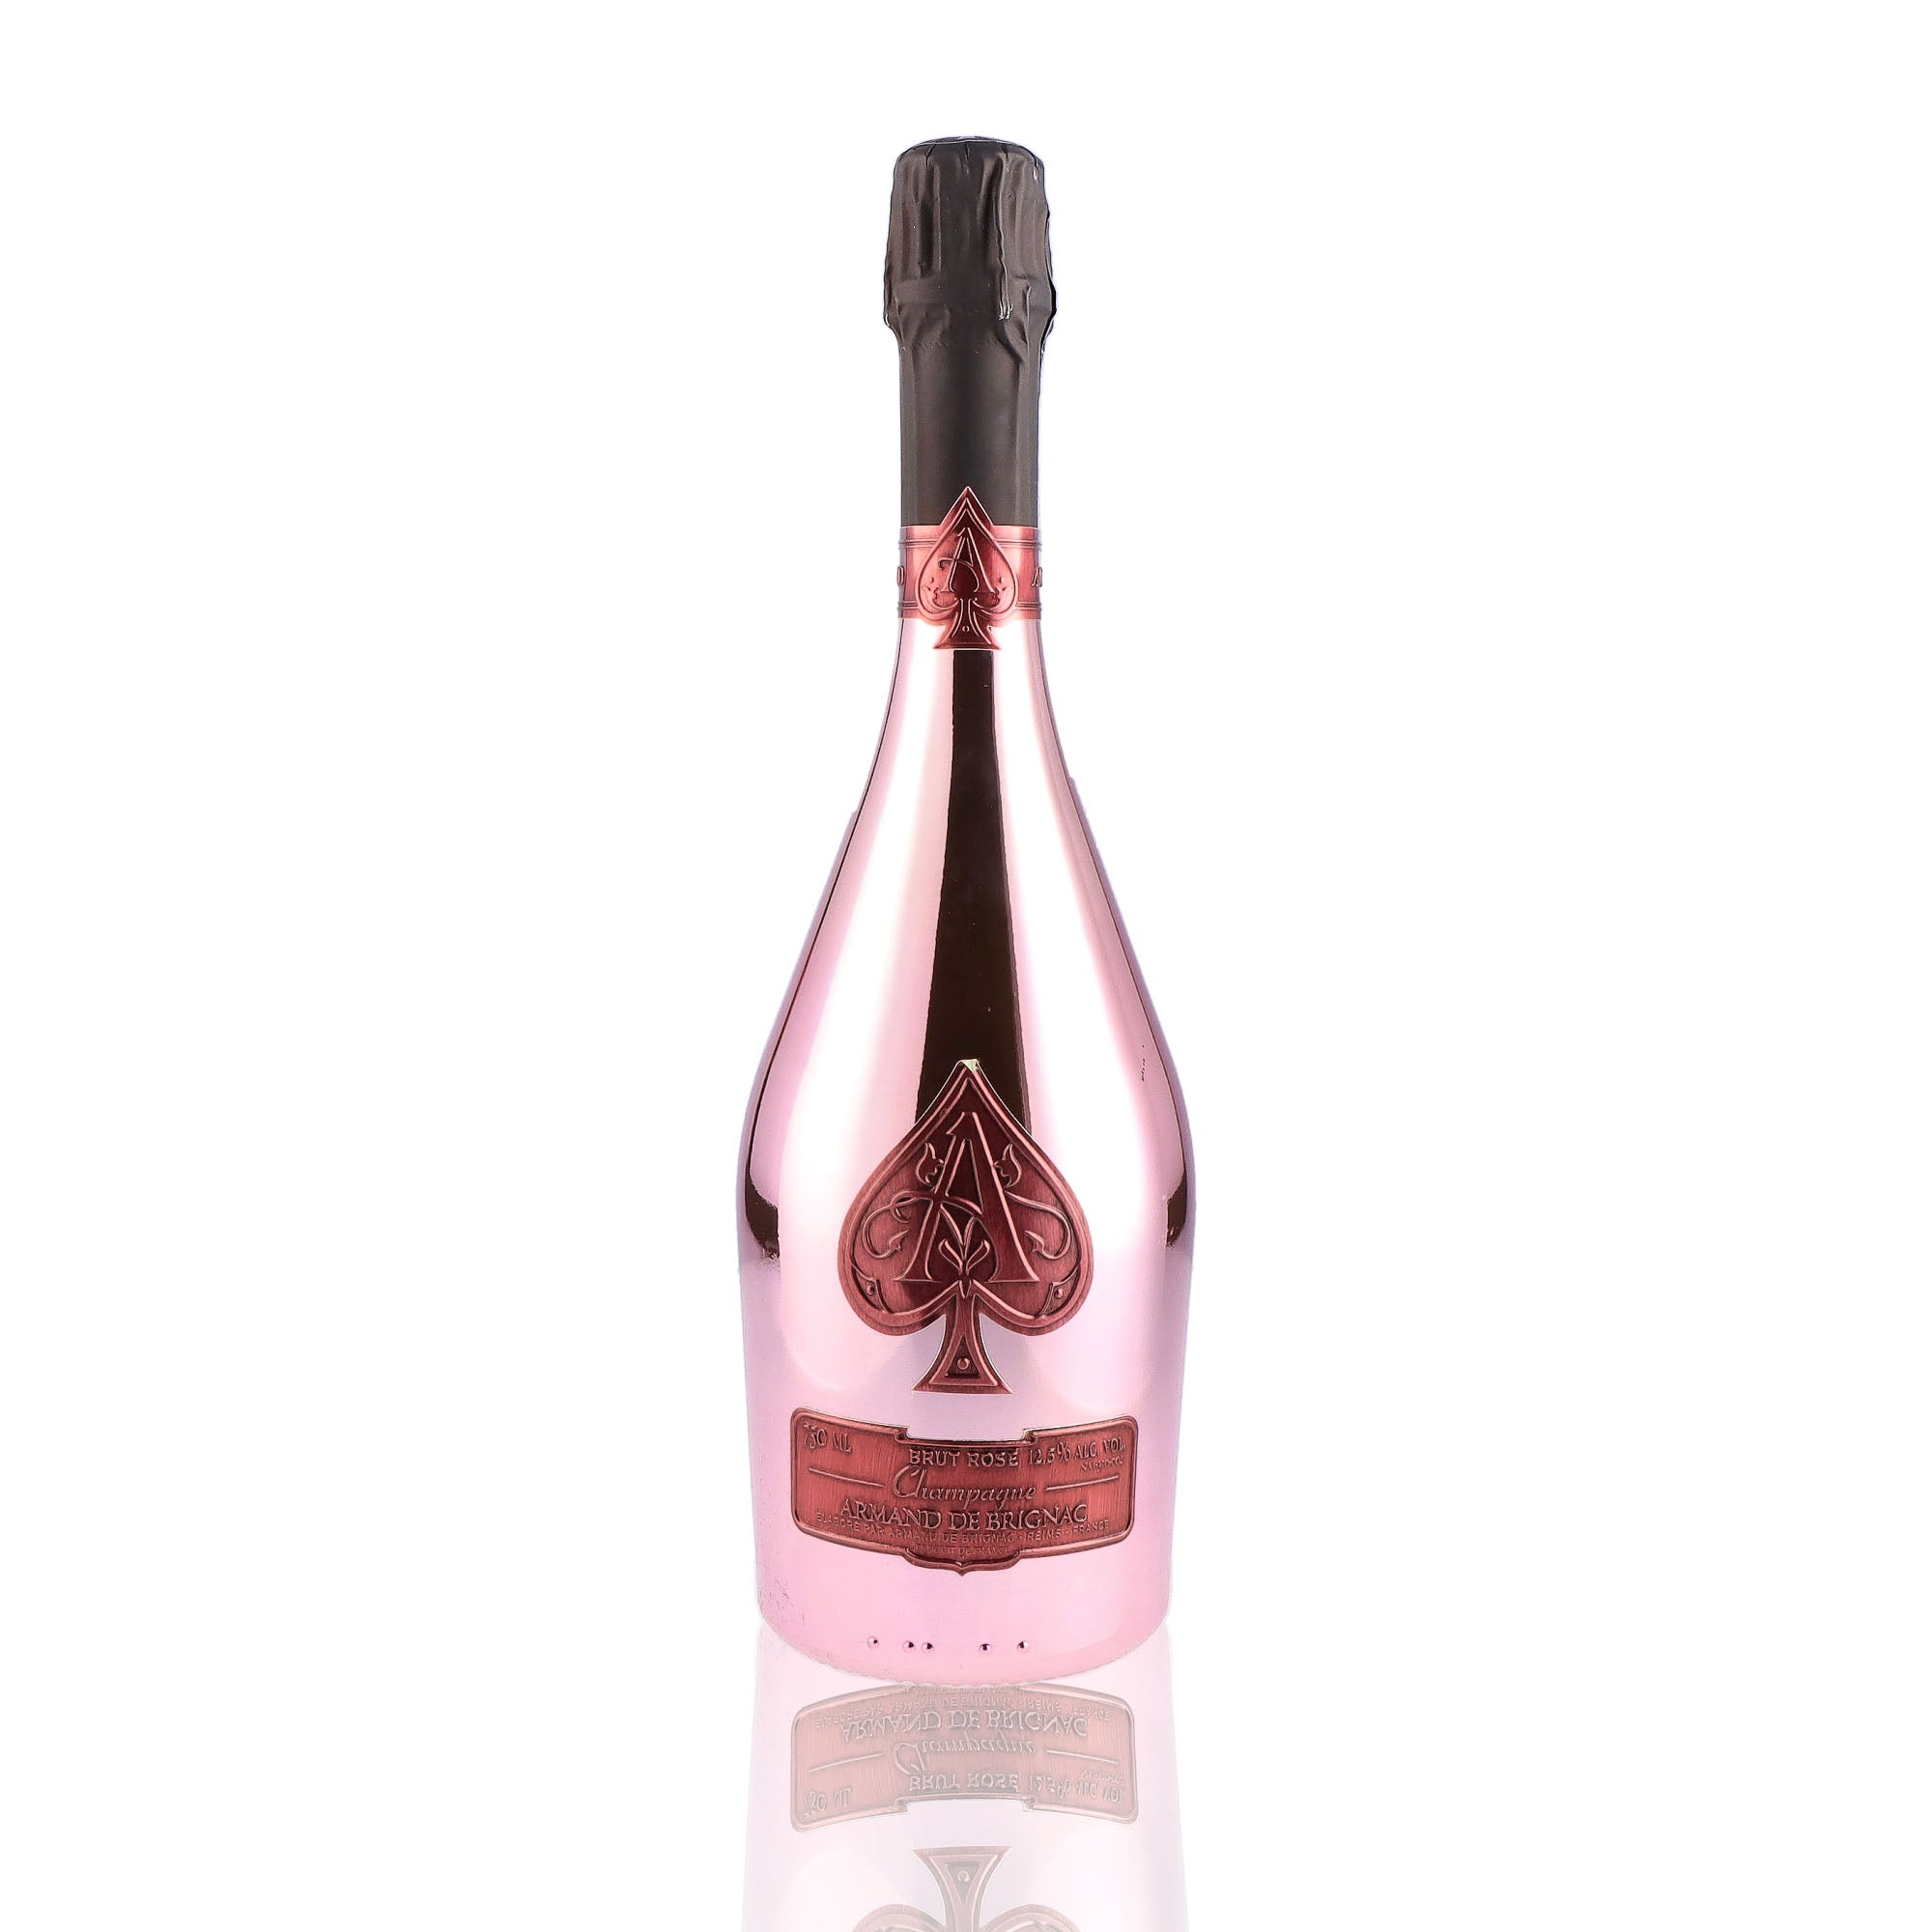 Une bouteille de champagne de la marque Armand de Brignac, de type rosé.